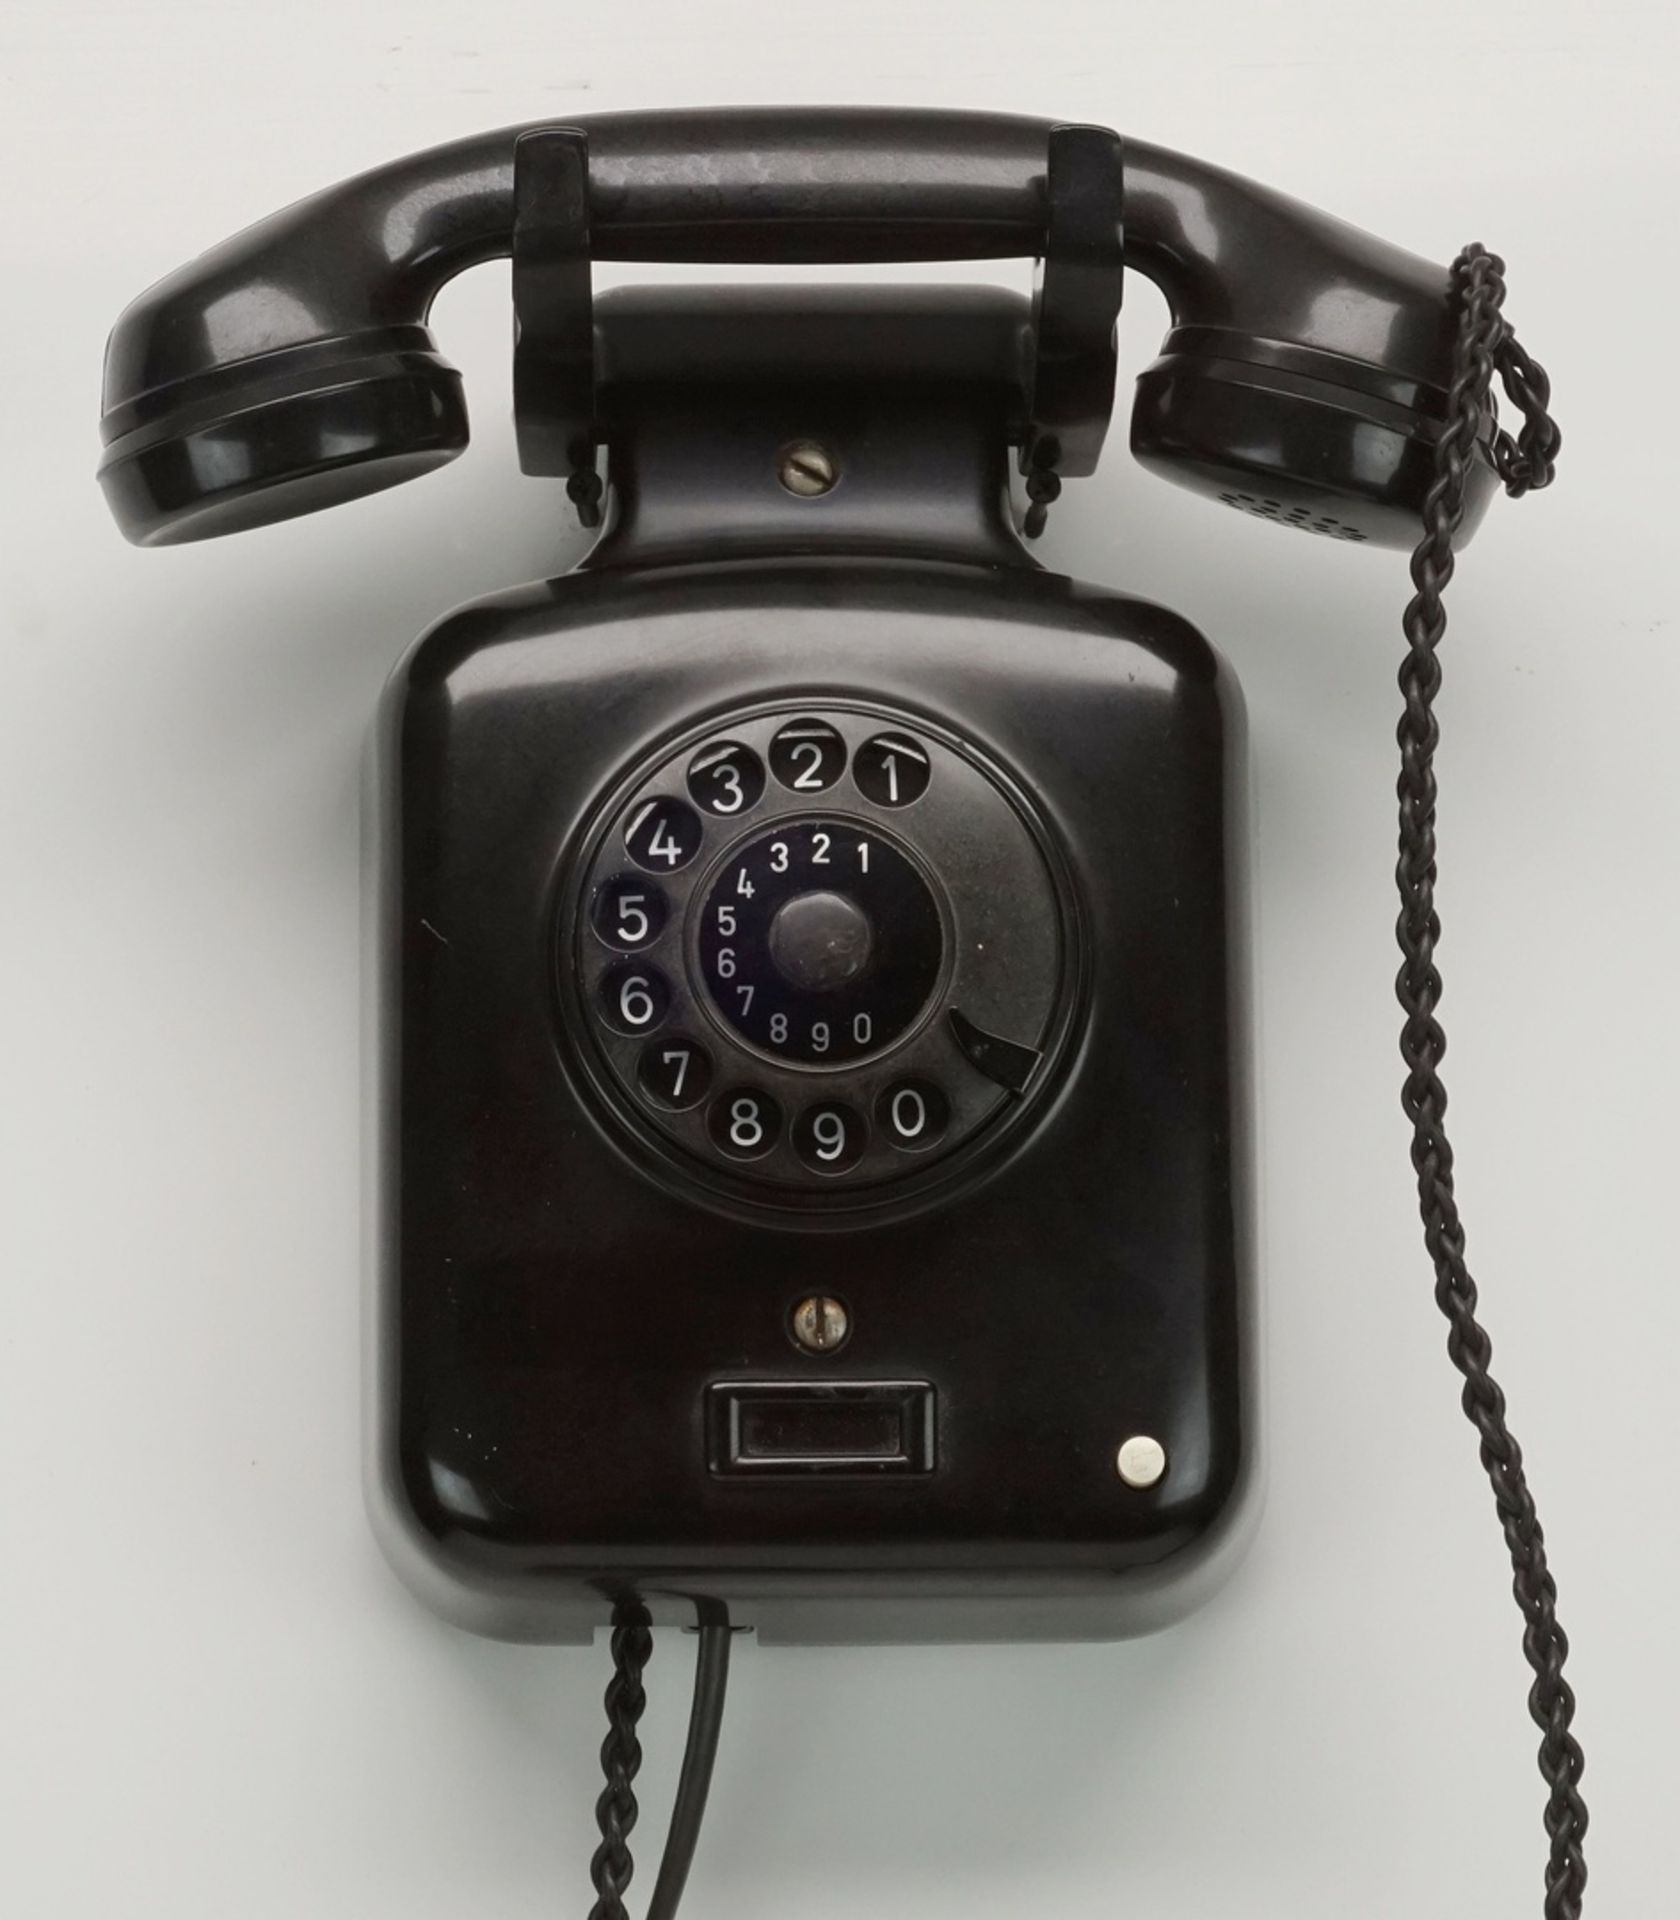 Siemens Wandtelefon mit Wahlscheibe, um 1950Bakelit, Doppelglocke, Modell "9 Fg wdst 5 b",